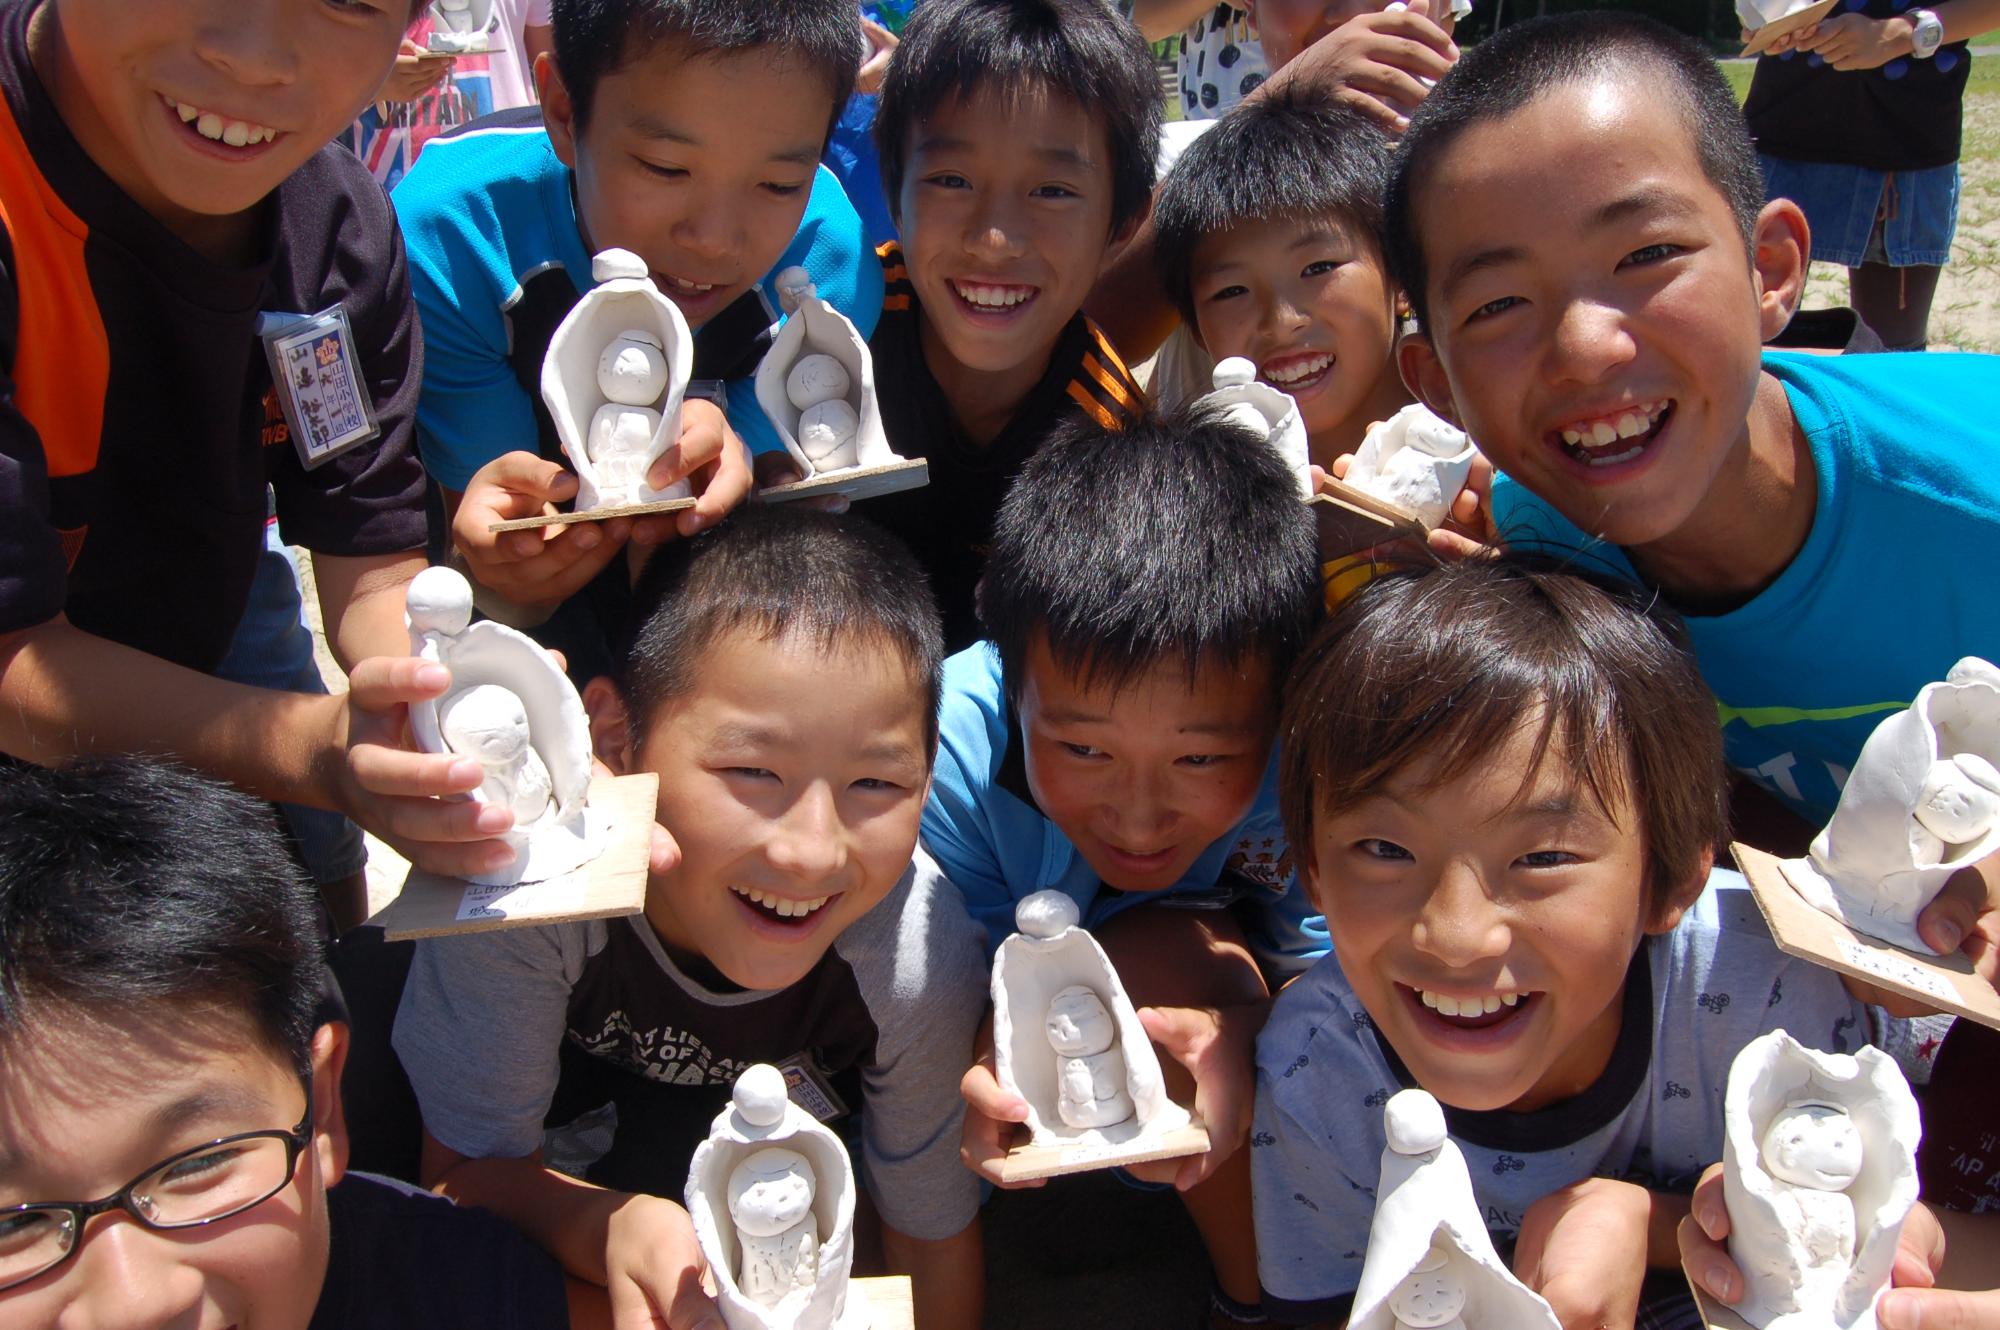 粘土で作ったお地蔵さんのようなものを持った子供たちが集まって笑顔で写っている写真